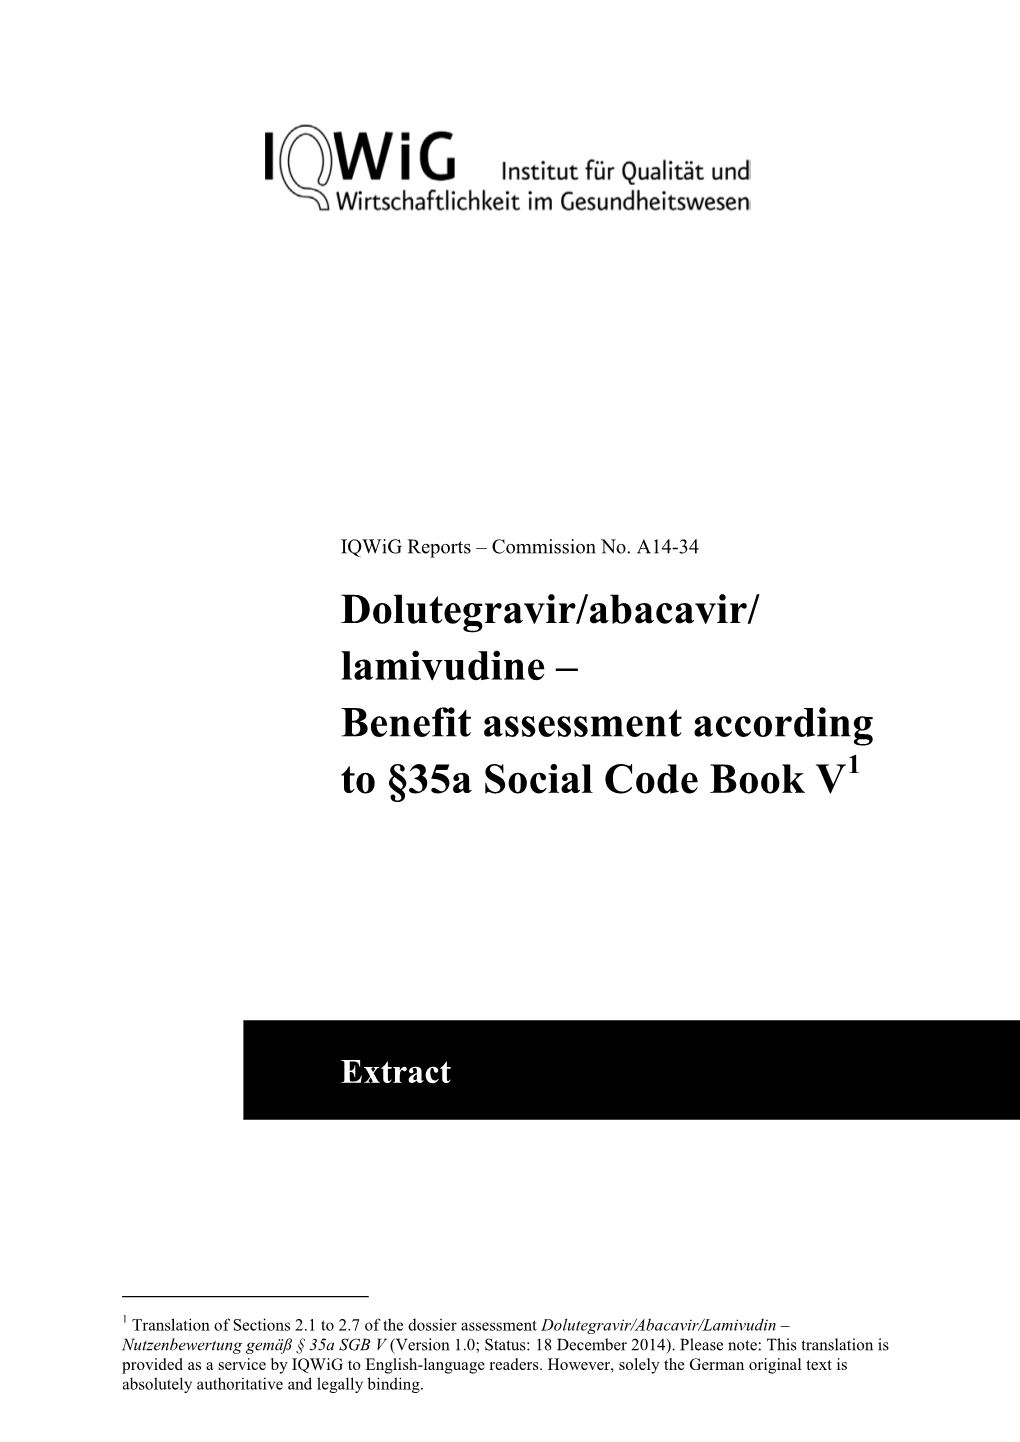 Dolutegravir/Abacavir/Lamivudine – Benefit Assessment Acc